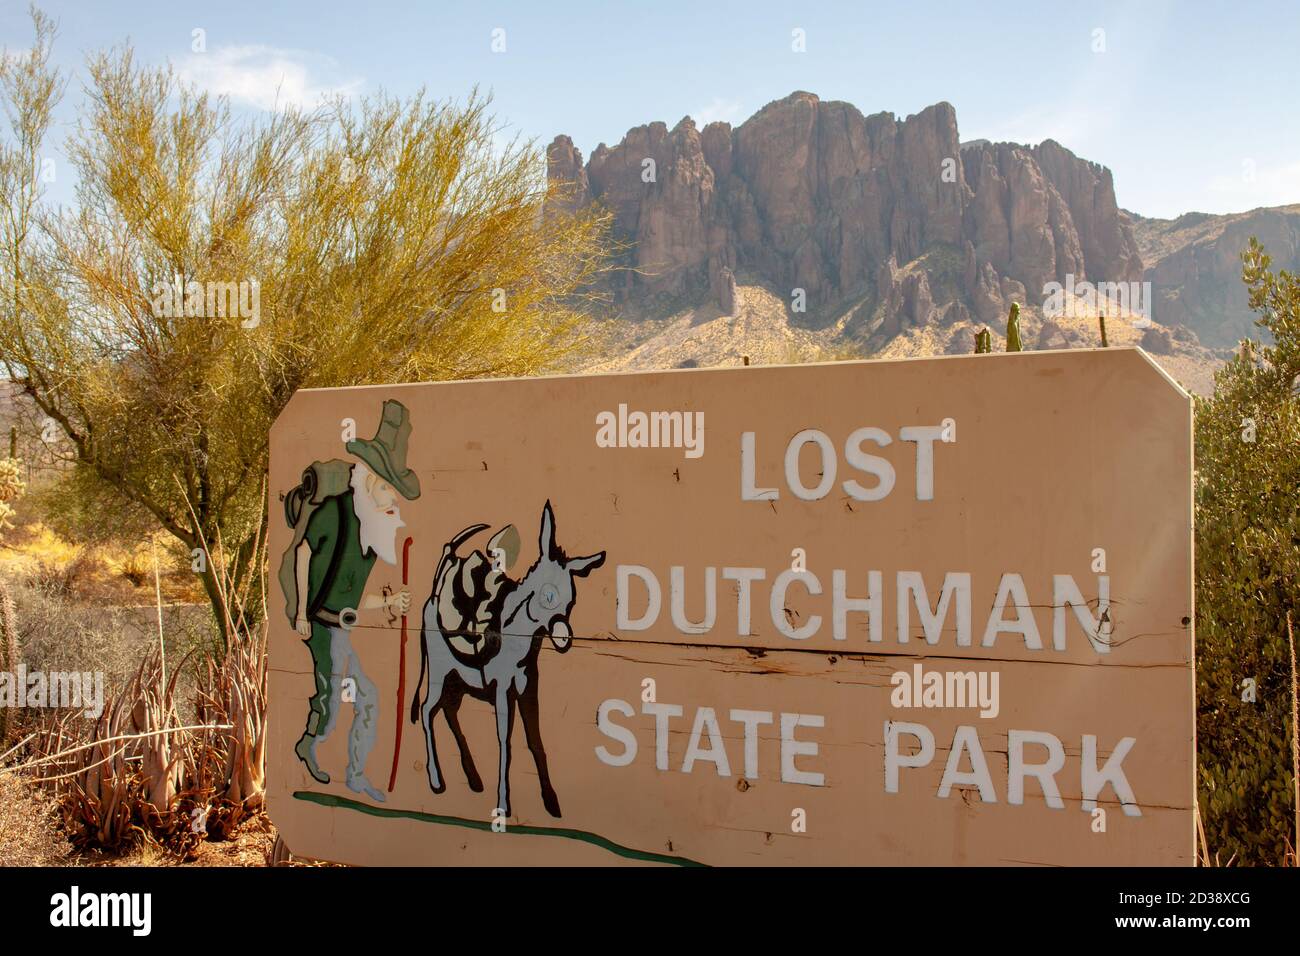 Apache Junction, AZ / USA - 7. Oktober 2020: Eintrittsschild zum Lost Dutchman State Park in Apache Junction, Arizona, USA Stockfoto